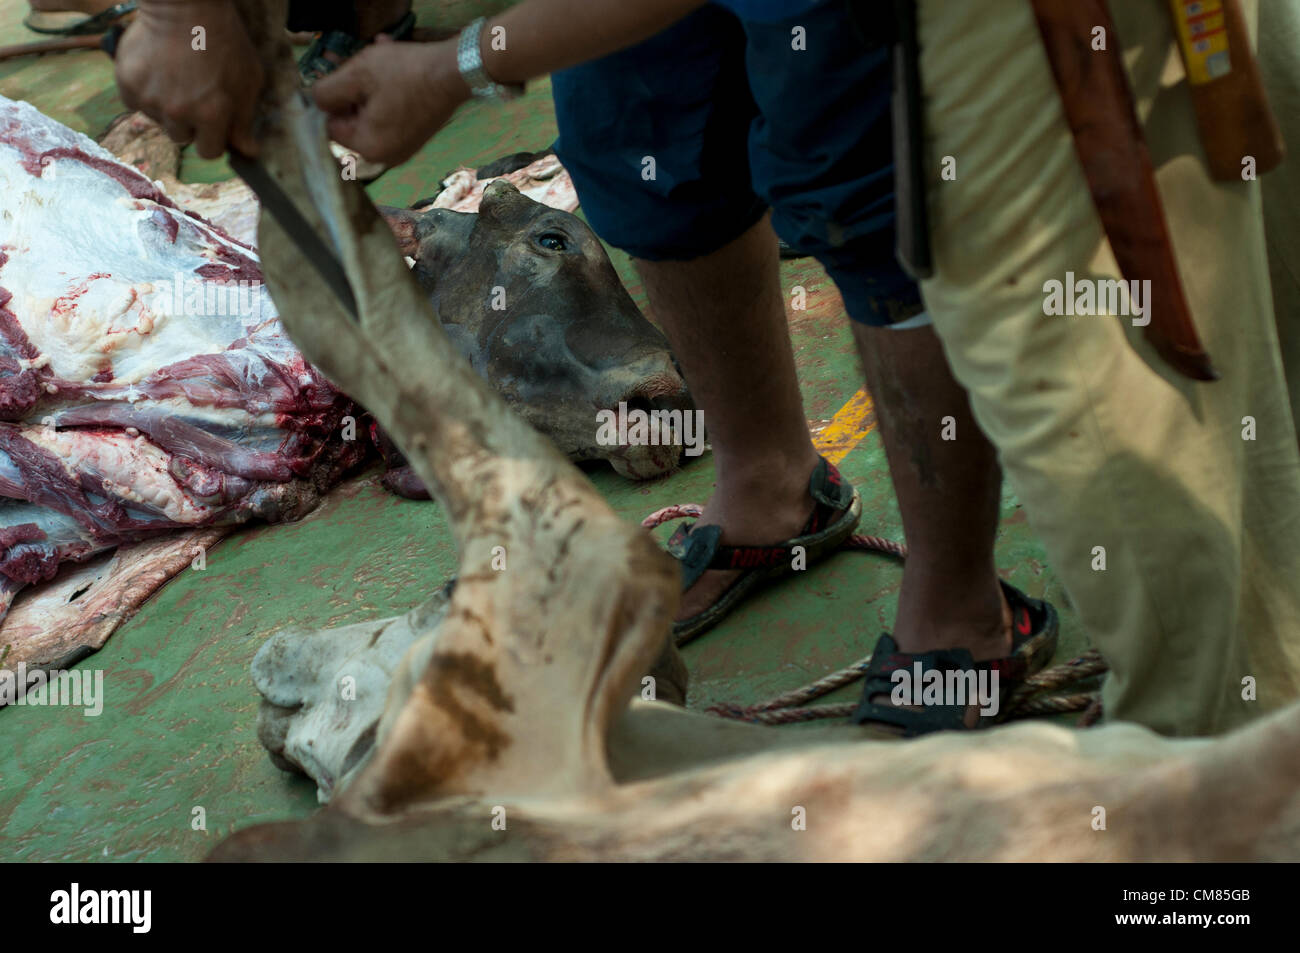 Ein Tier geschlachtet wurden, nachdem während der Eid al-Adha Opferfest in Selangor außerhalb Kuala Lumpur, Malaysia, Montag, 26. November 2012 zu opfern. Stockfoto